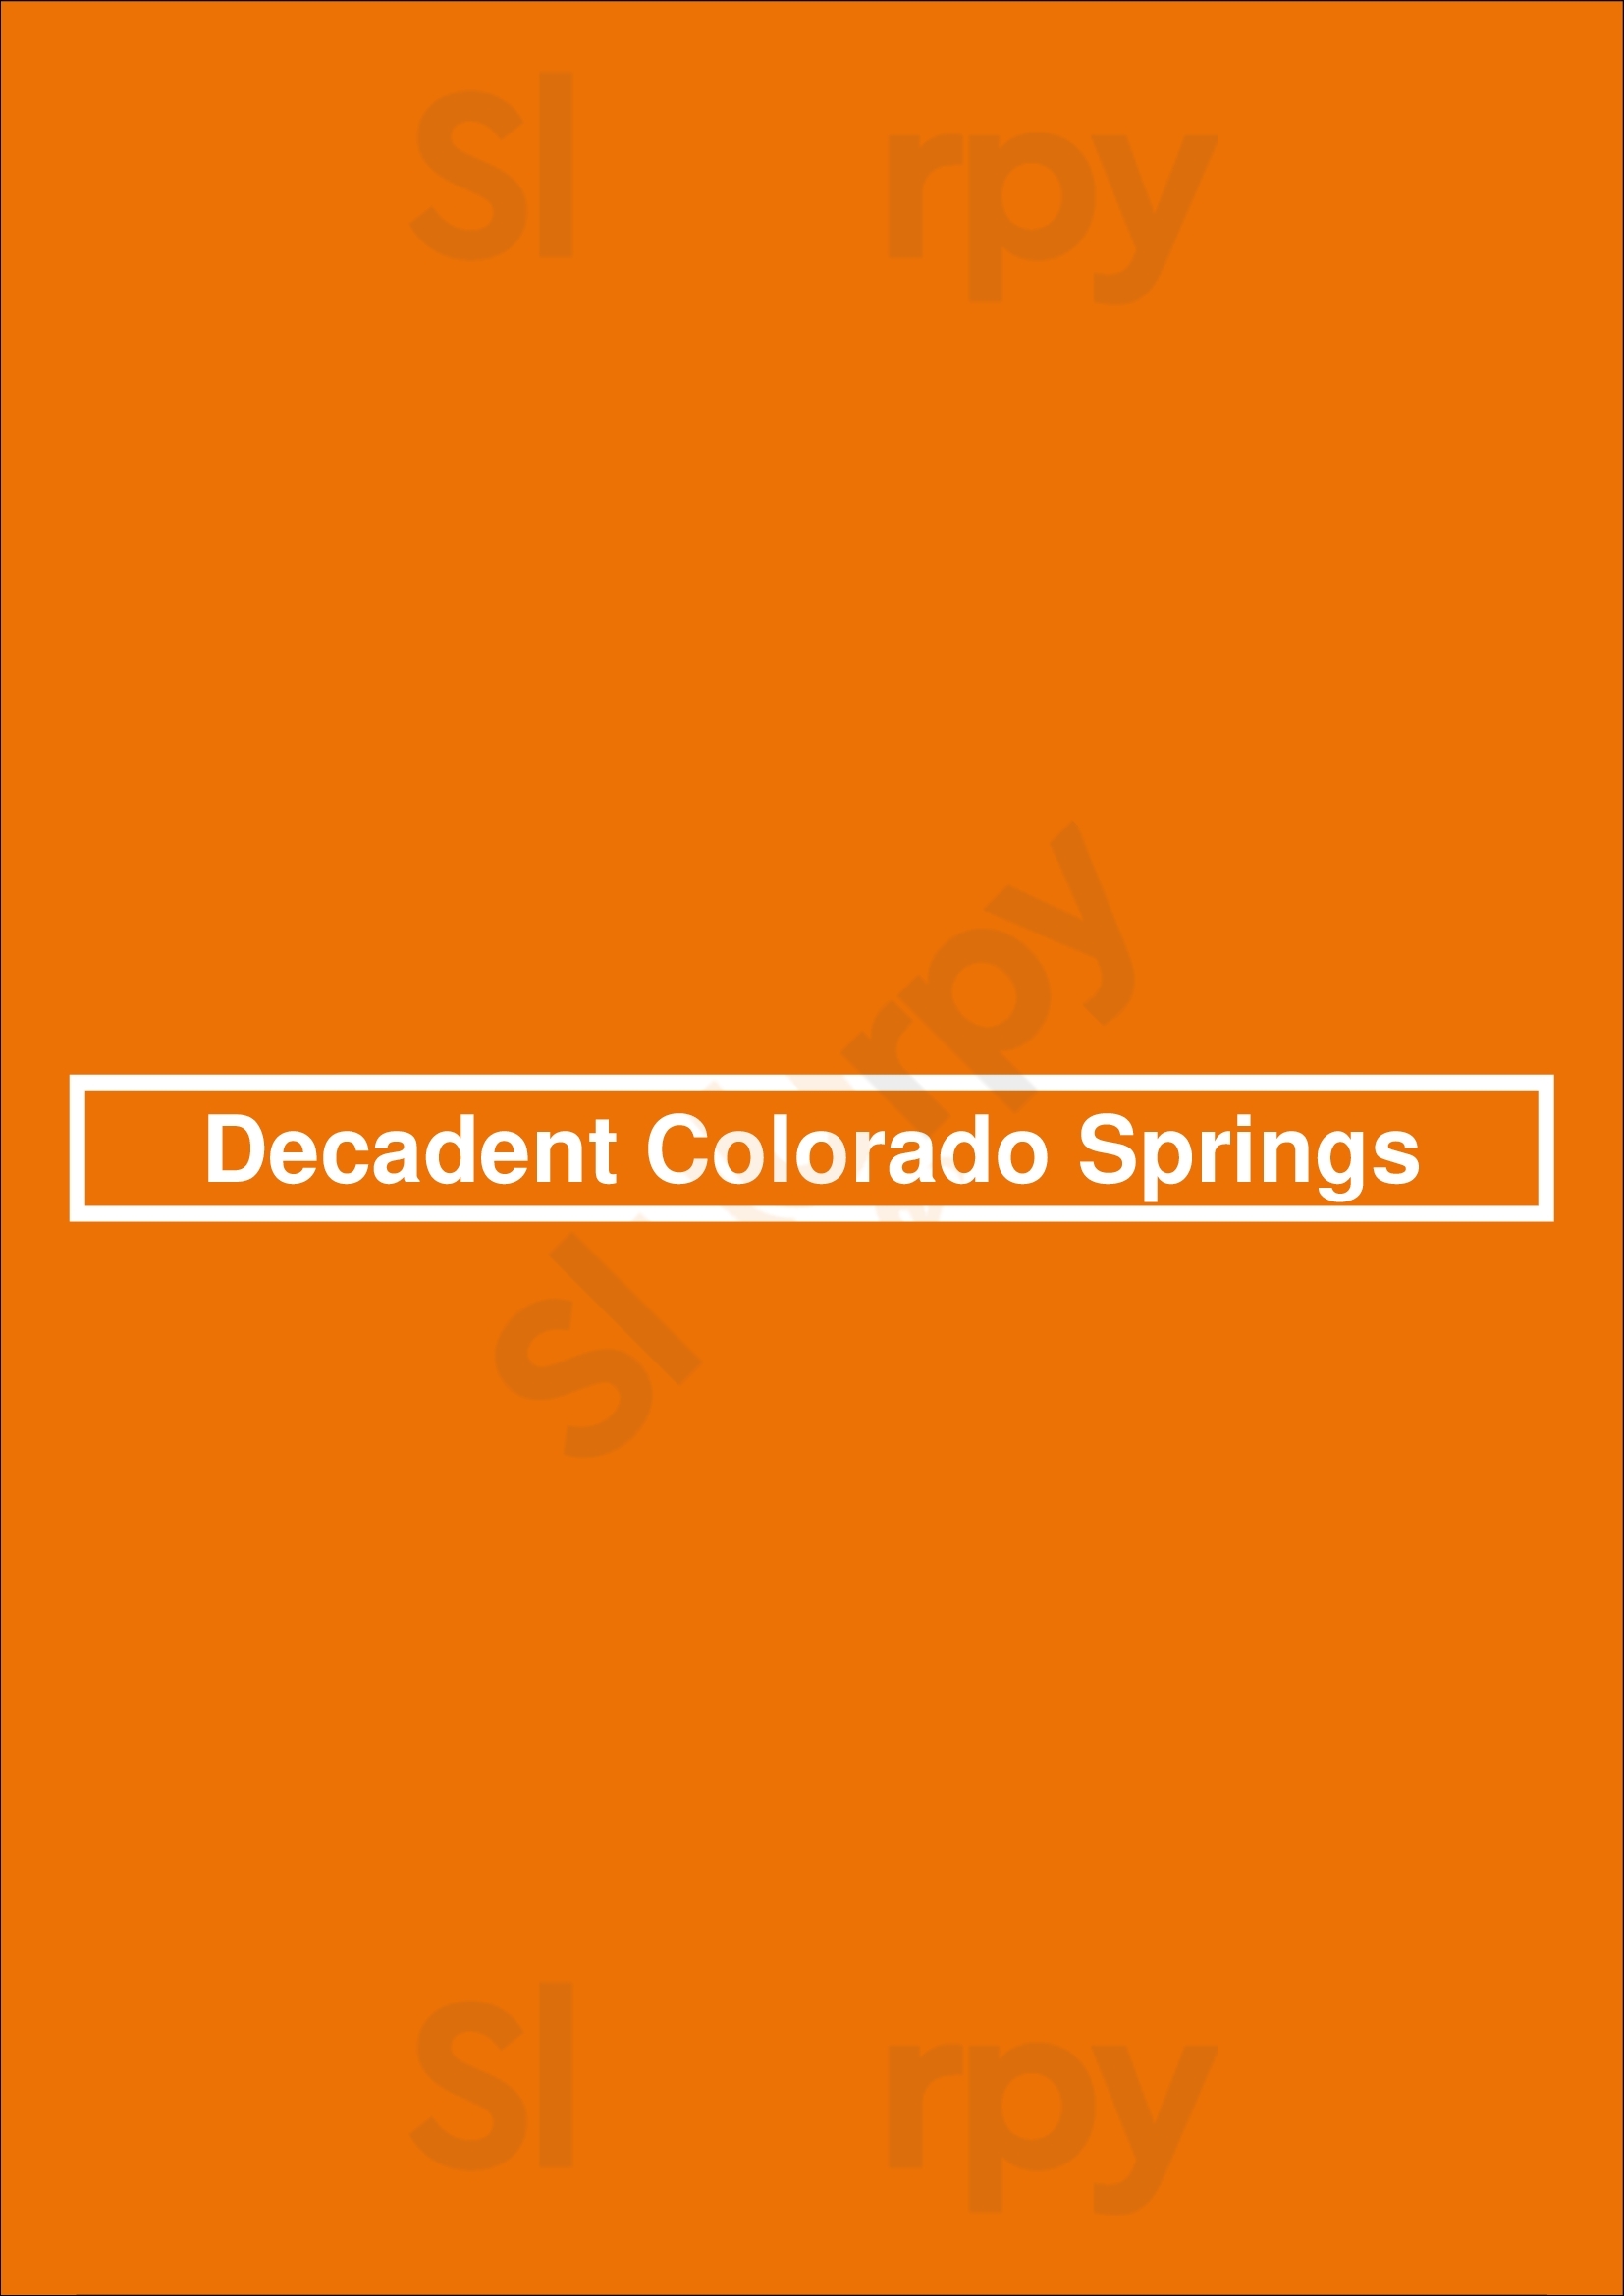 Decadent Colorado Springs Colorado Springs Menu - 1